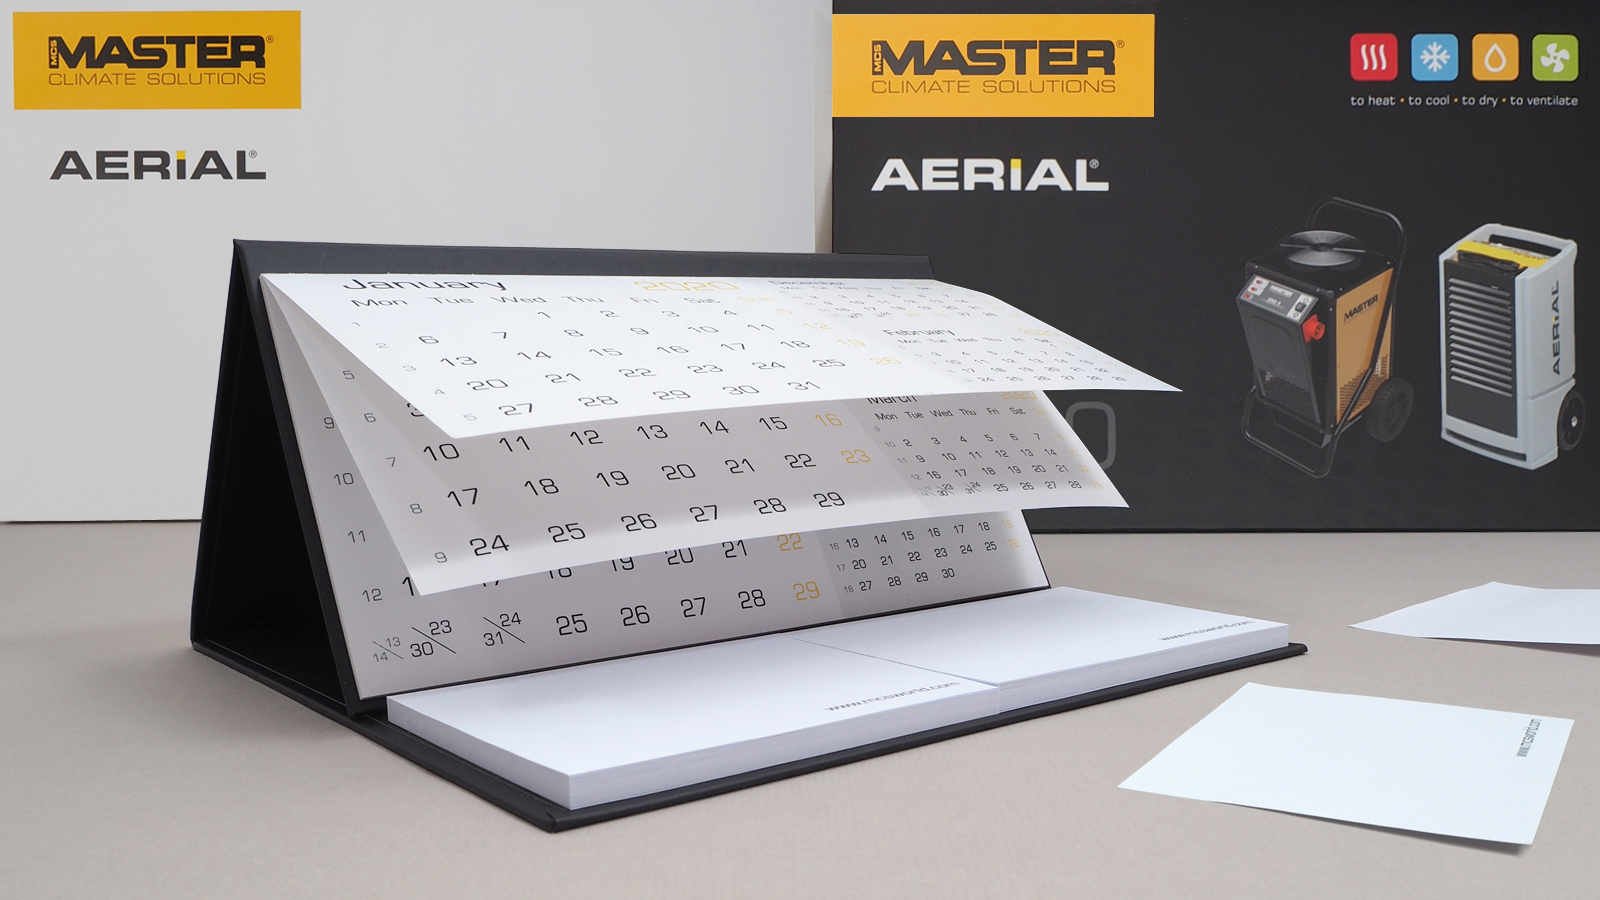 Master Climate Solutions – kalendarz czterodzielny z wypukłą główką i kopertą oraz kalendarz biurkowy stojący (piramidka) z dwoma notesami